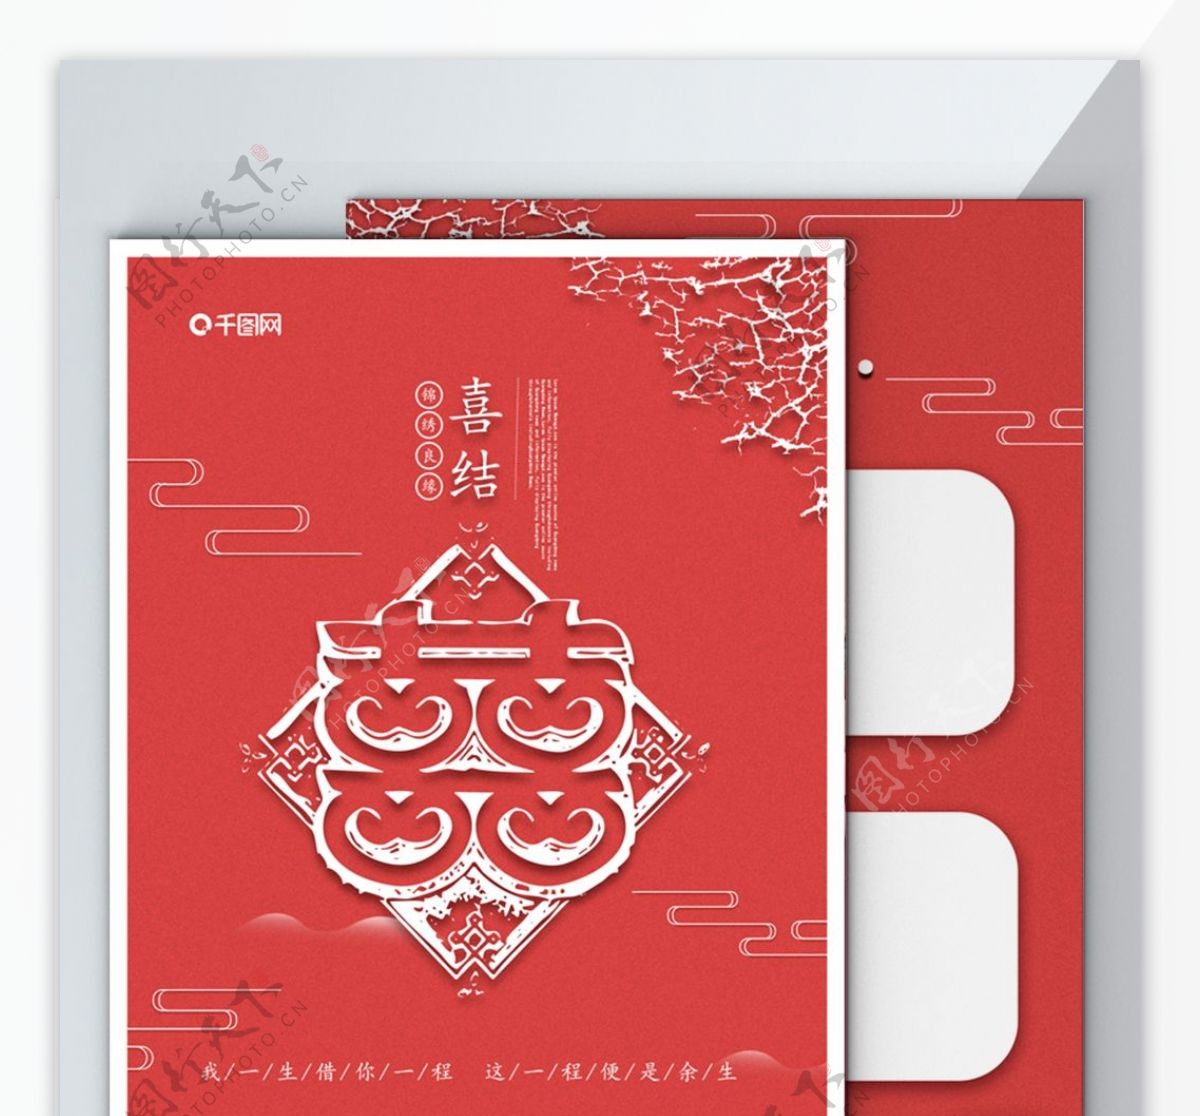 婚庆中国风扁平化传统剪纸风格DM单海报